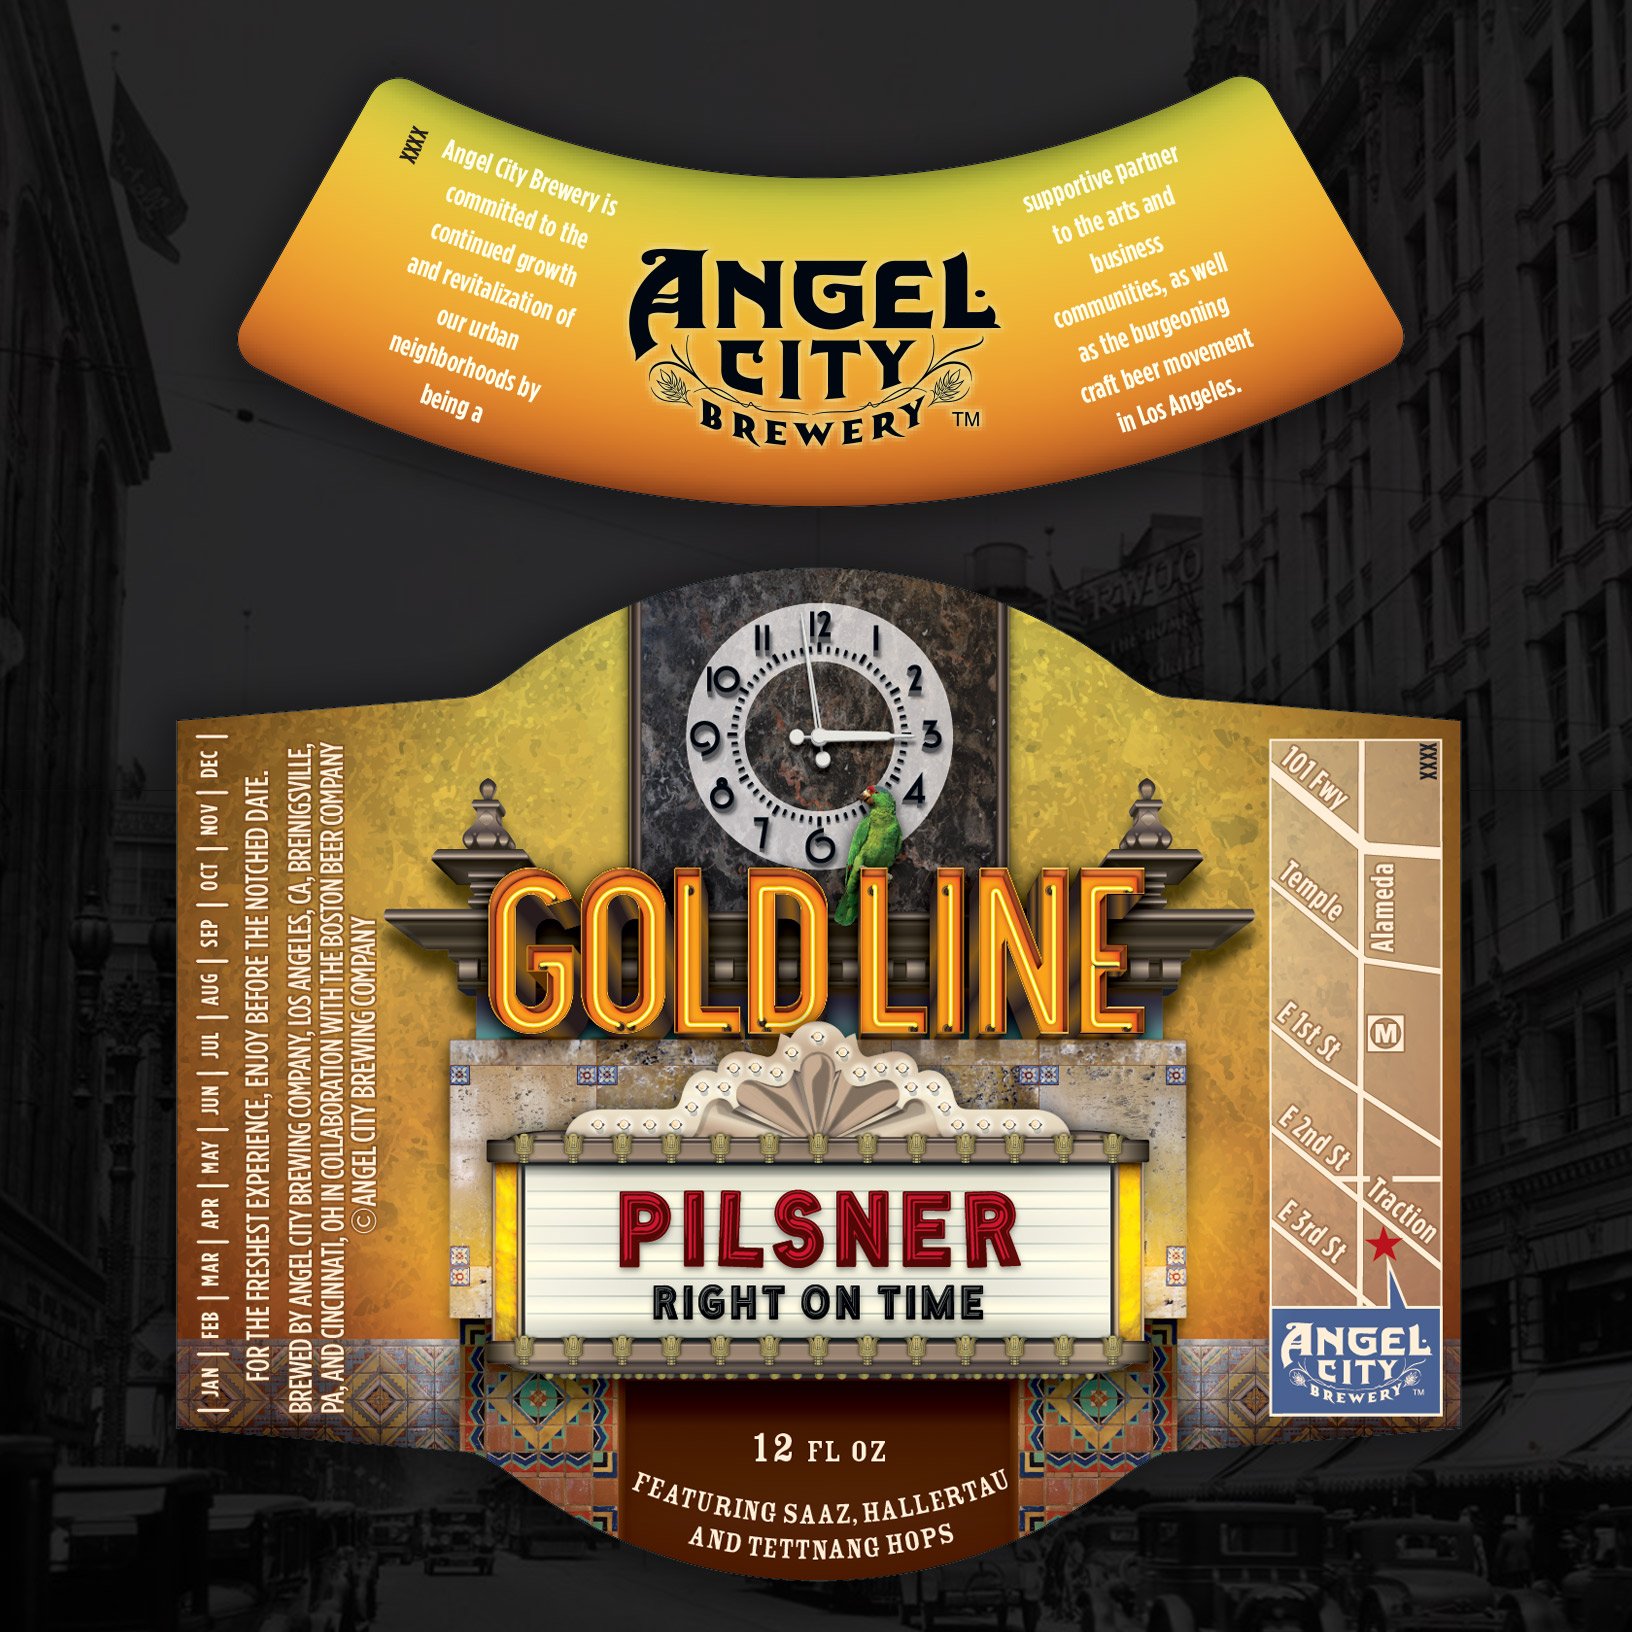 Angel City Brewery GoldLine Pilsner labels